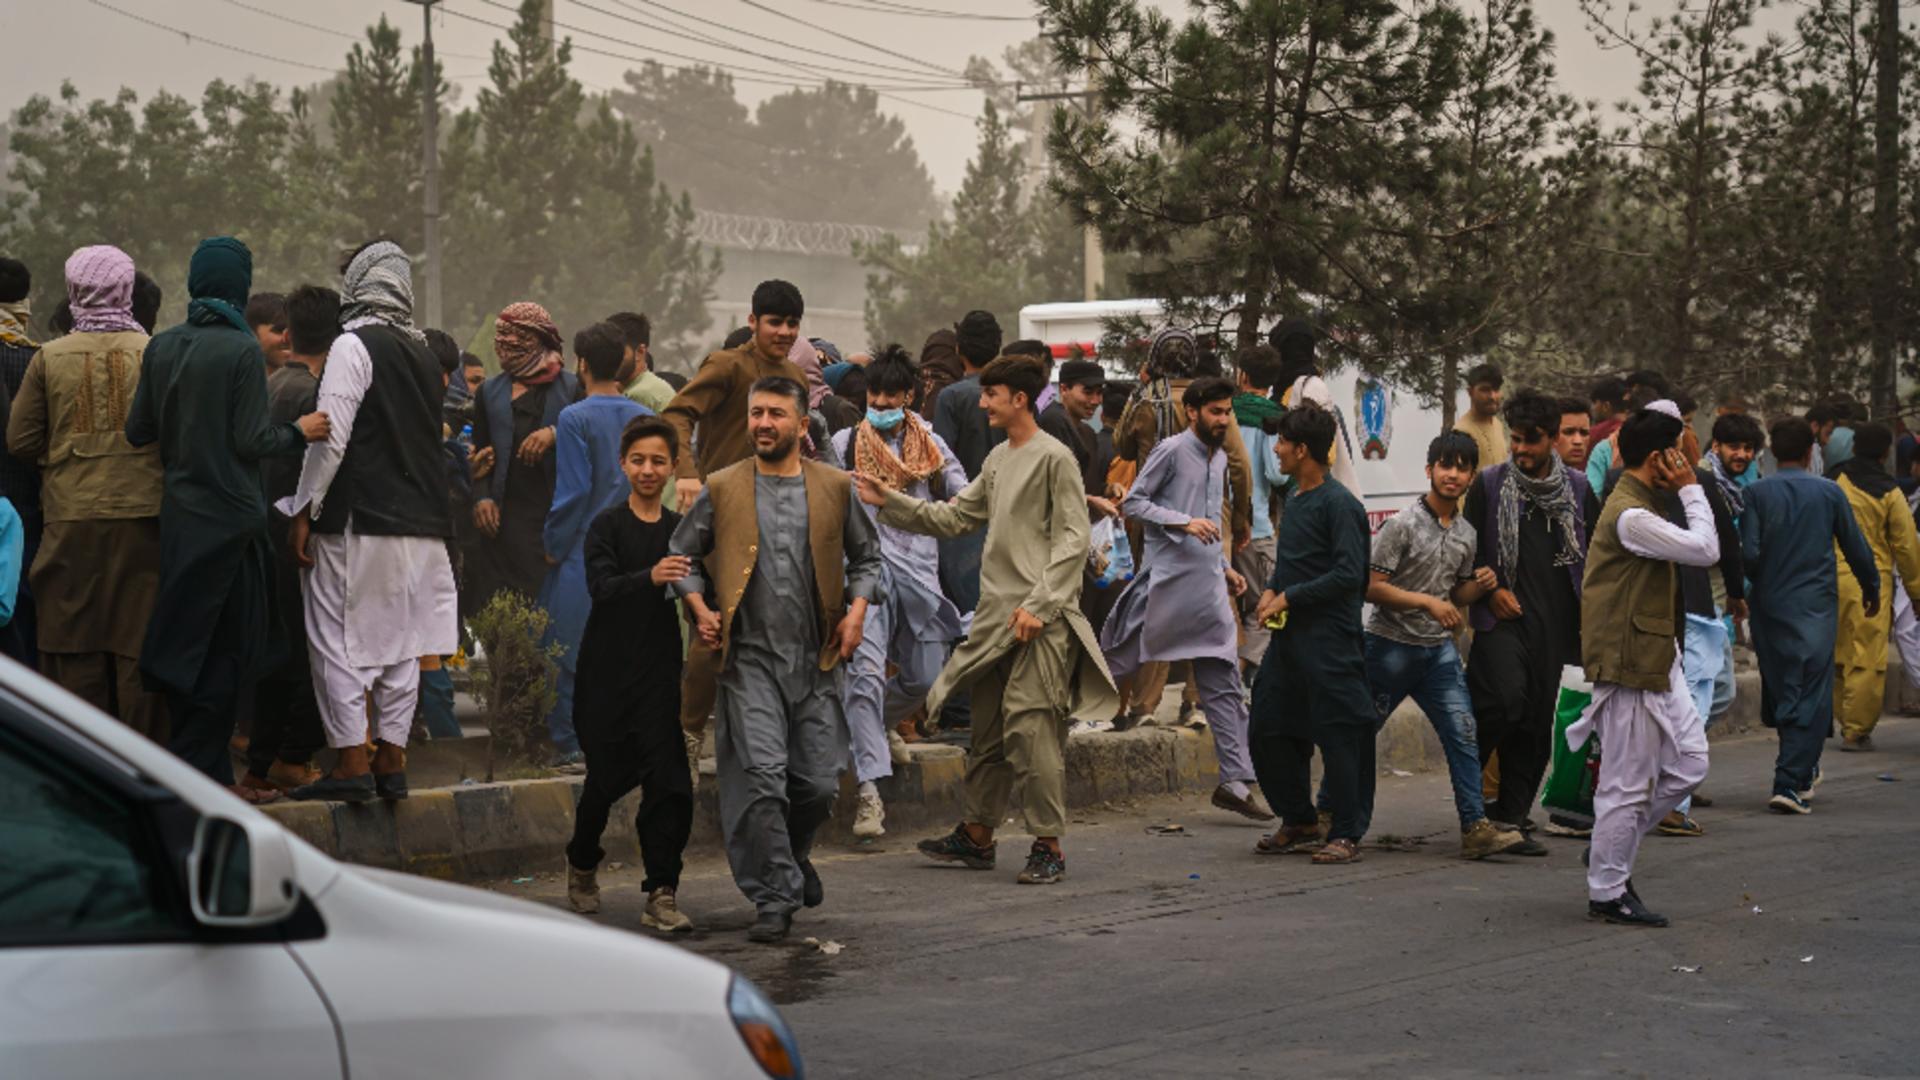 Povești emoționante ies la iveală din iadul din Afganistan / Foto: Profi Media 